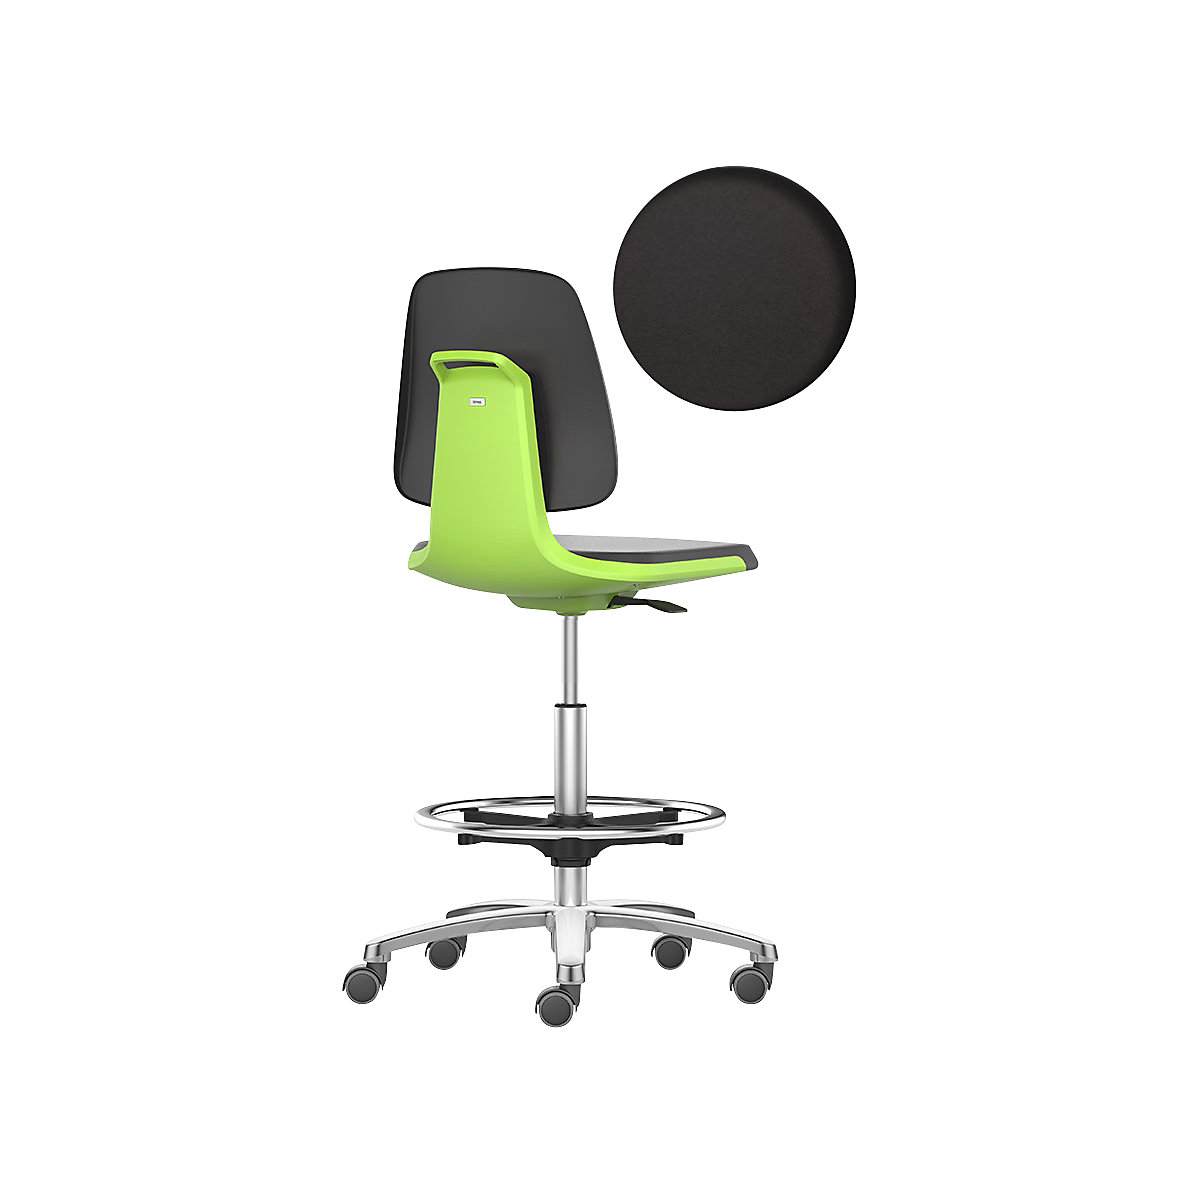 bimos – Siège d'atelier LABSIT, siège haut avec roulettes blocables et repose-pieds circulaire, assise en mousse PU, vert